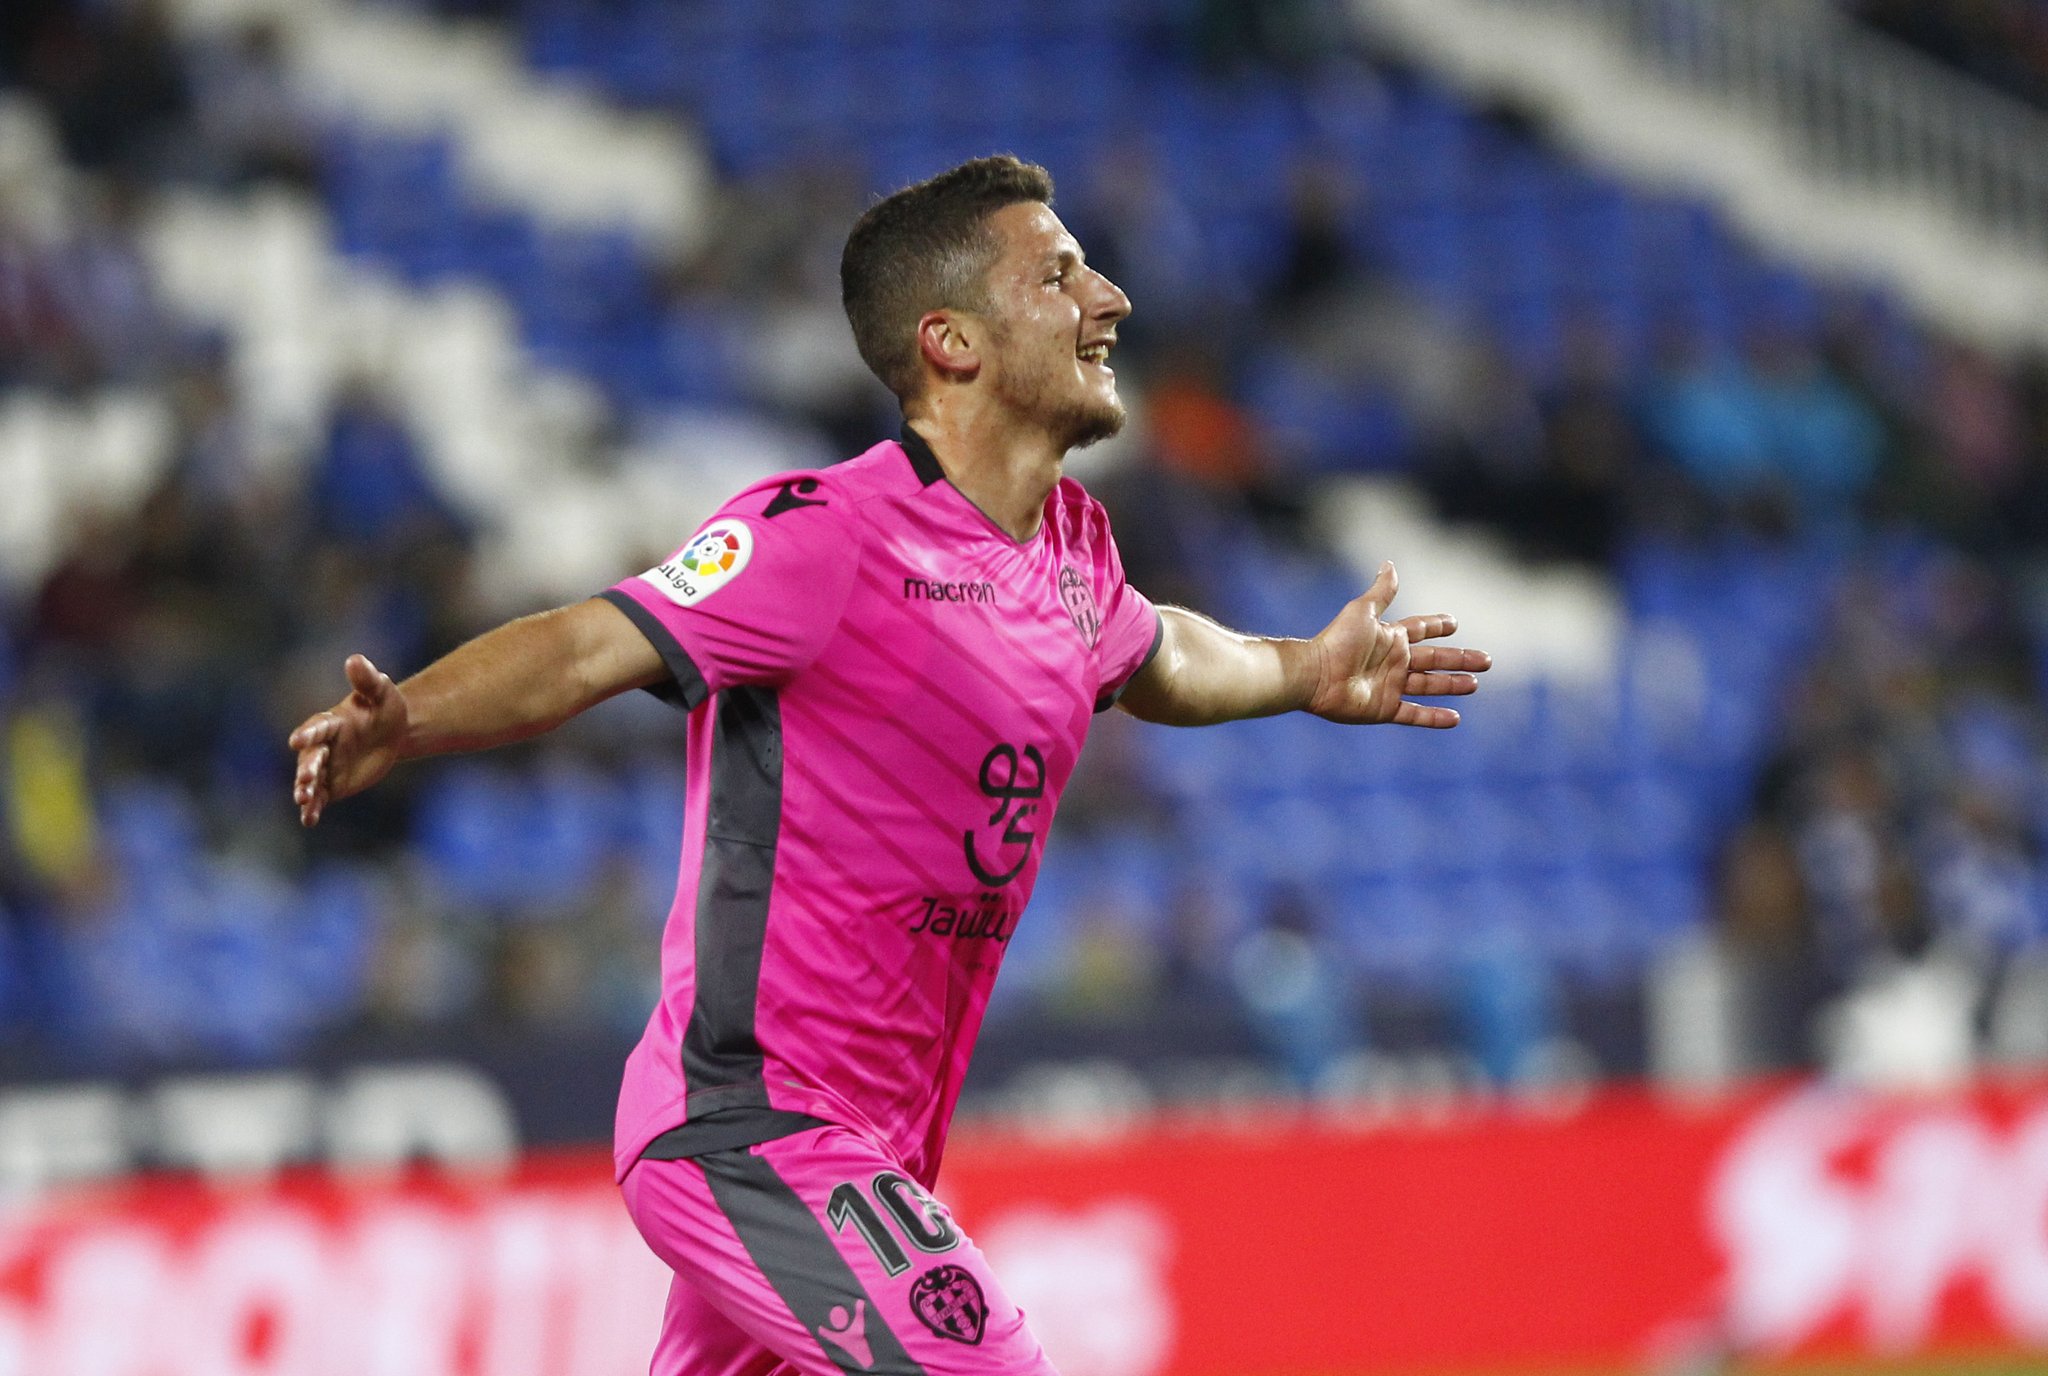 ESPANHOL: Cumprindo tabela, Levante faz 3 a 0 no Leganés